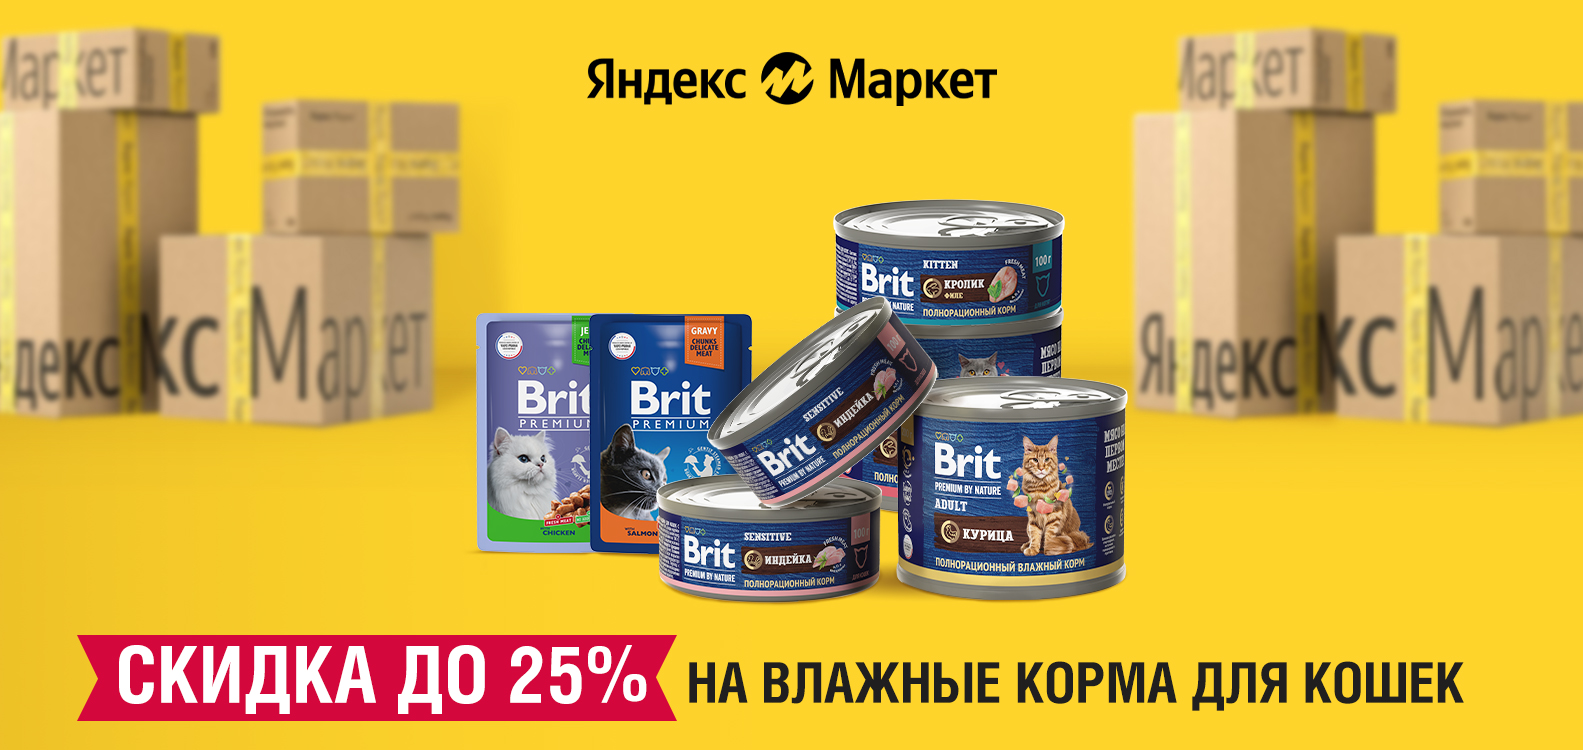 Яндекс.Маркет: скидки до 25% на влажные корма Brit Premium для кошек